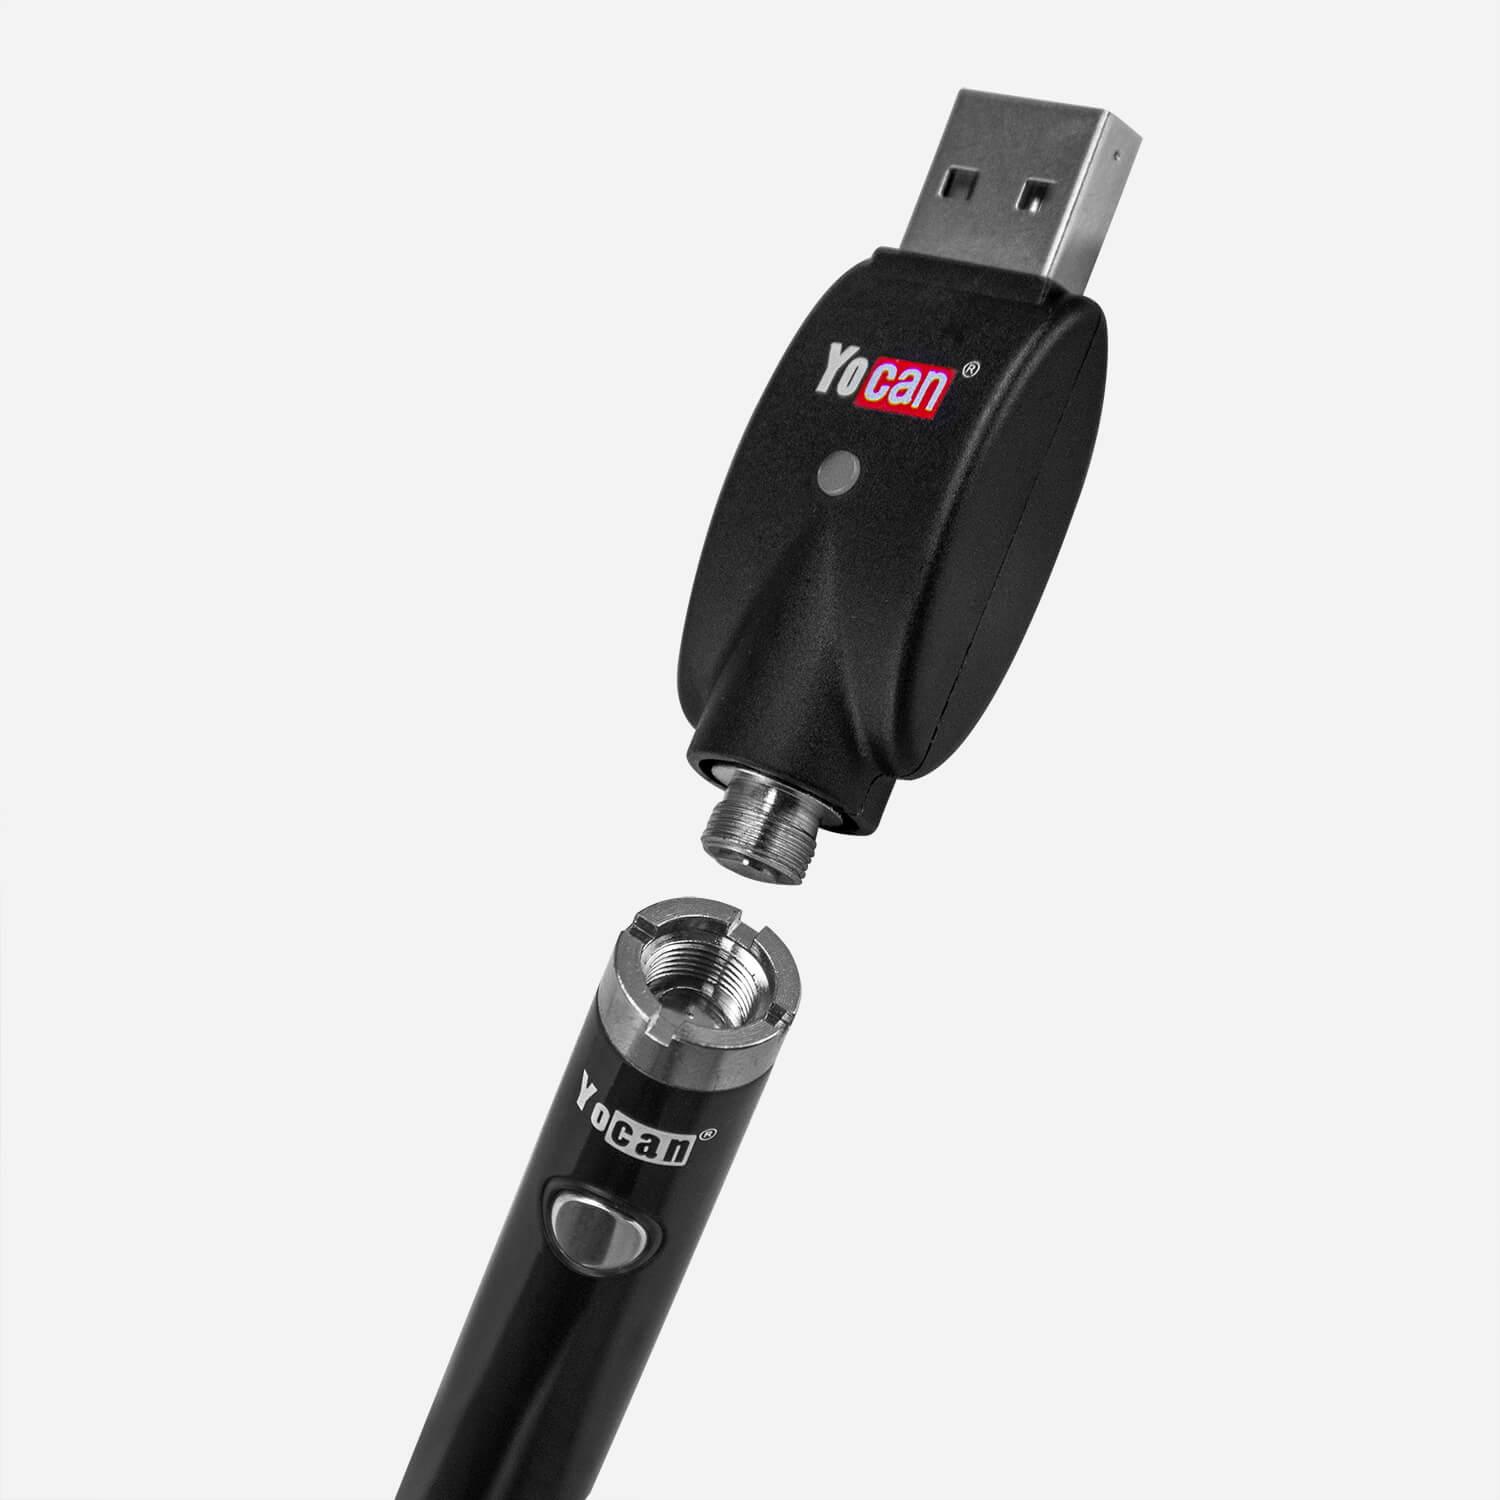 Yocan B-smart Vape Pens With USB - PILOT DIARY